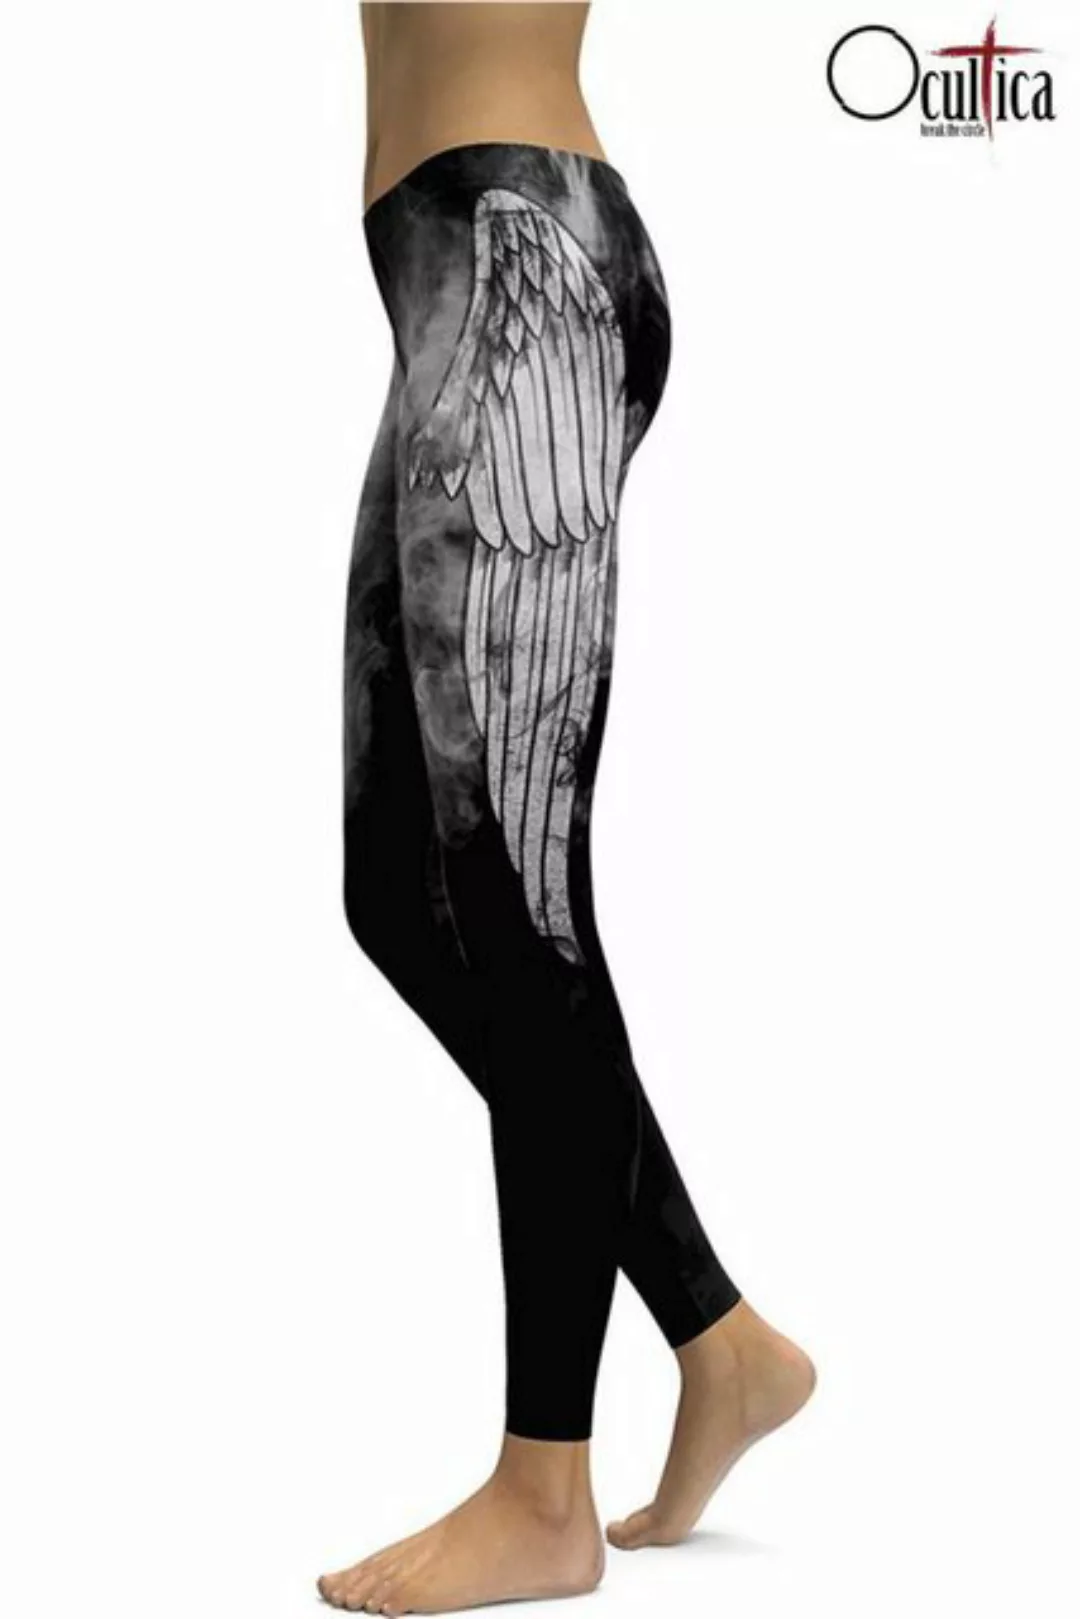 Ocultica Leggings Ocultica - winged Leggings - (2XL,L,M,S,XL) günstig online kaufen